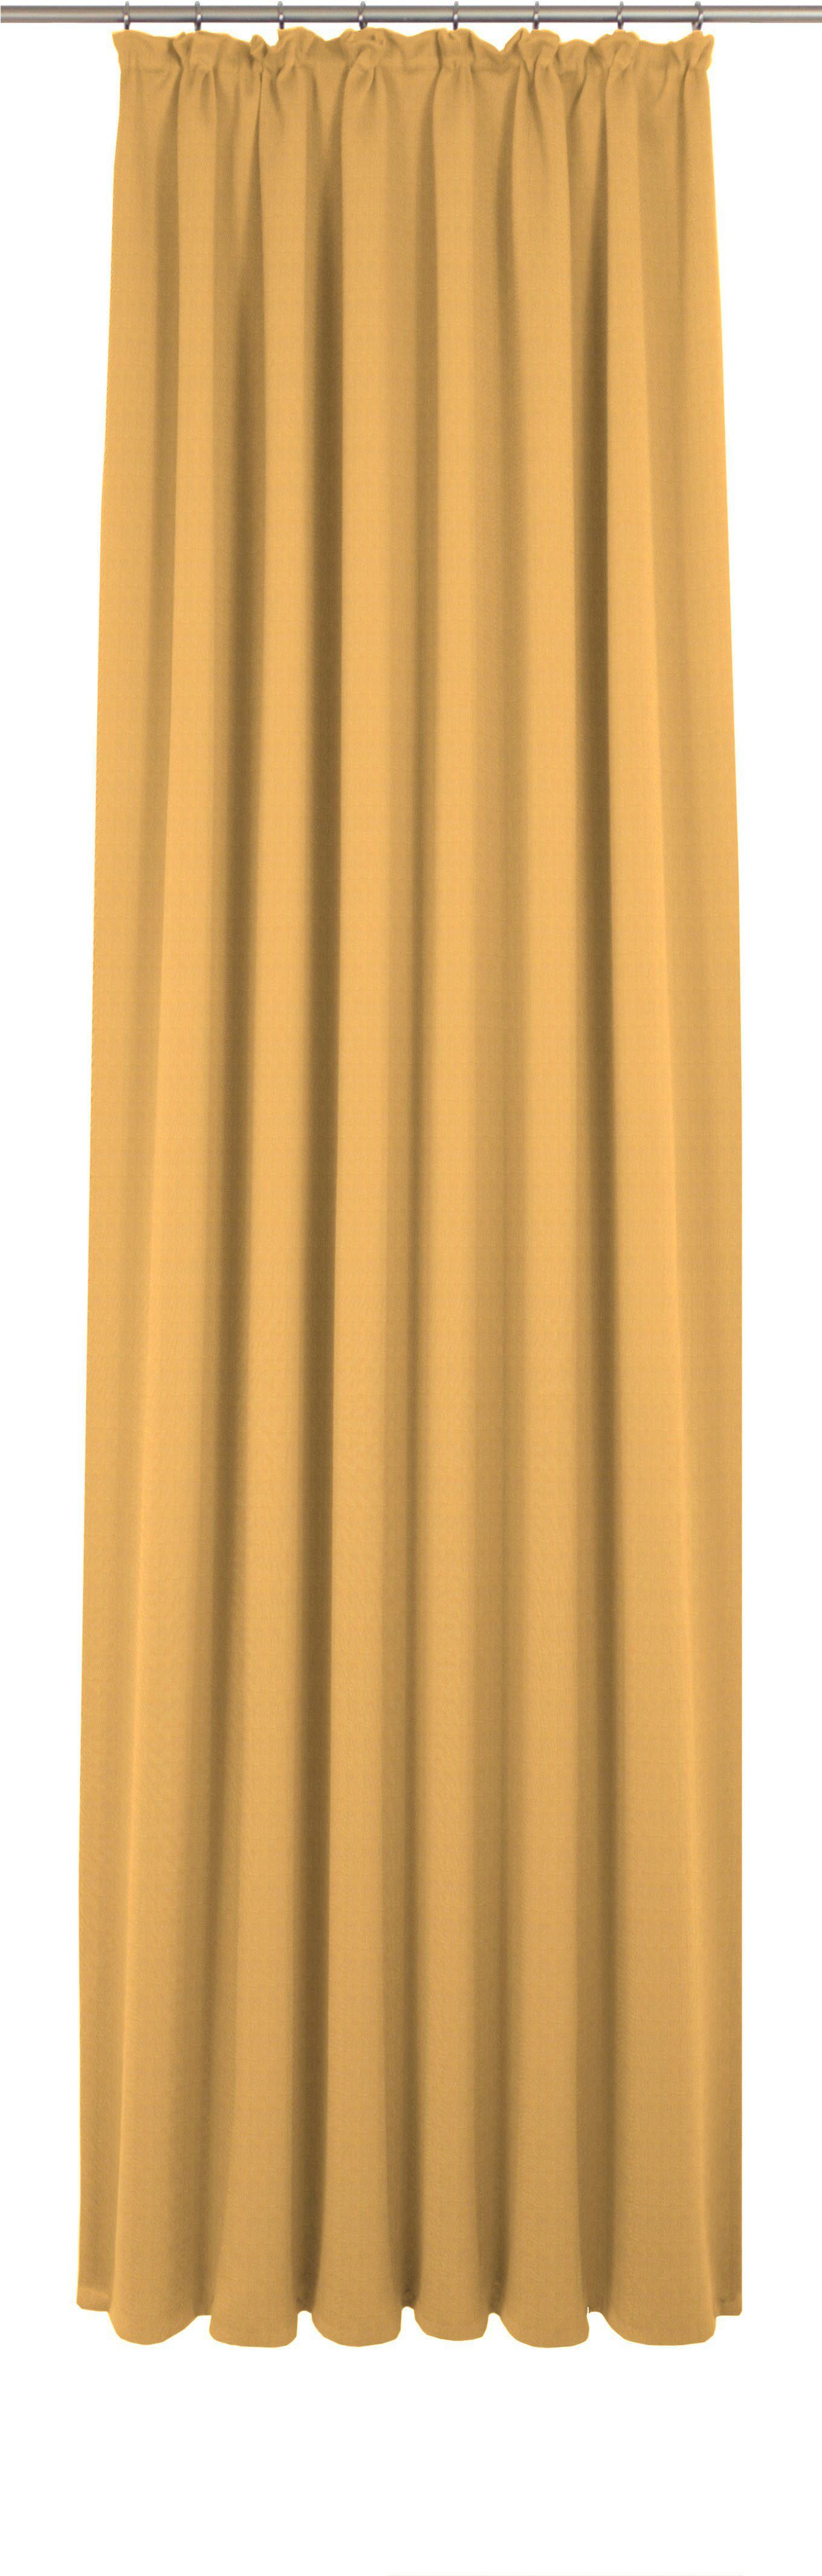 St), Maß nach (1 blickdicht, Kräuselband Vorhang Collection, Uni Wirth, gelb